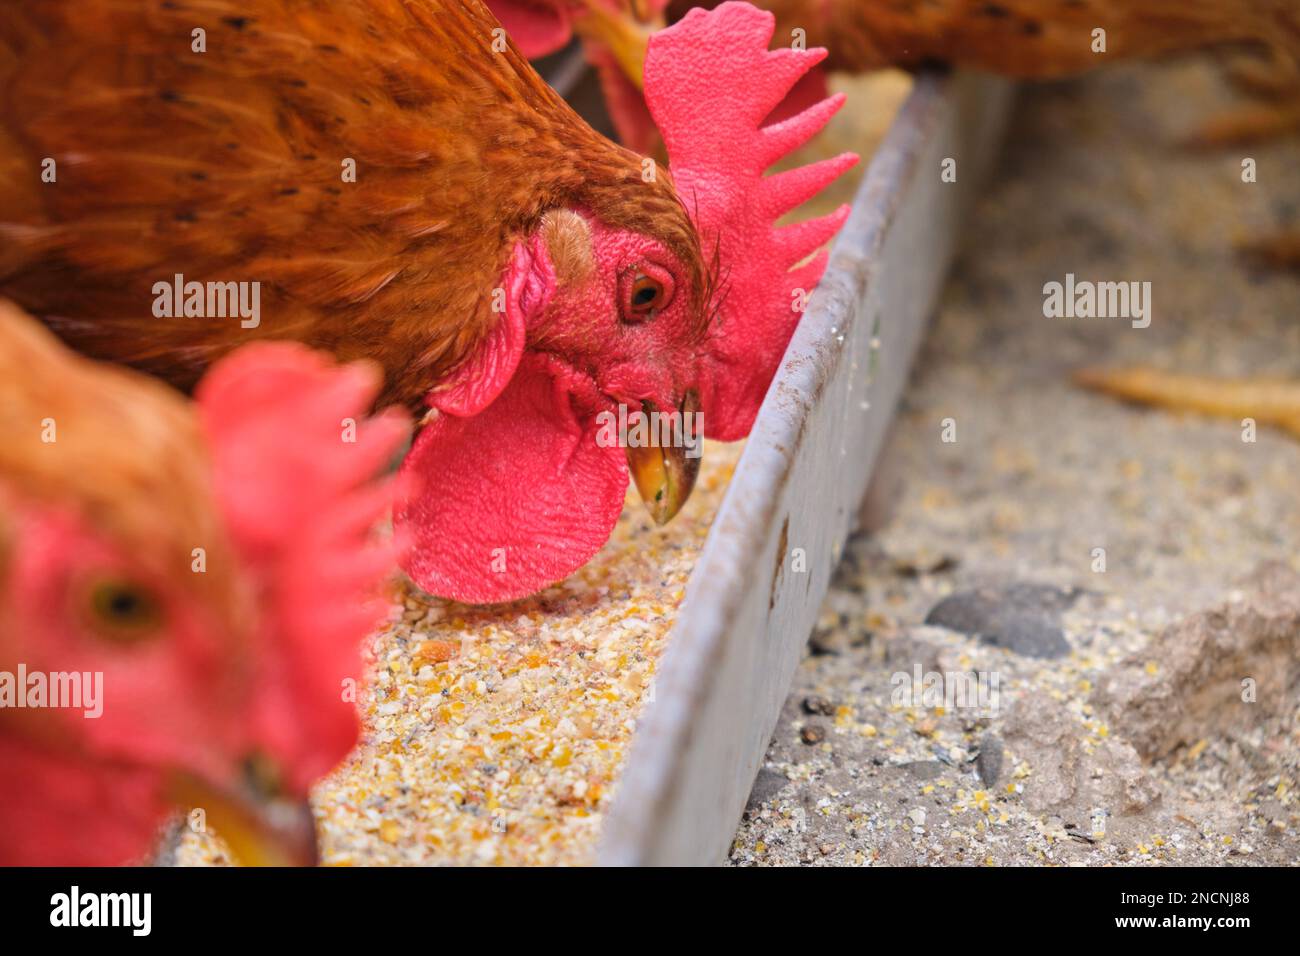 Primo piano galline biologiche galline galline gallo pecchiante mangiando grano ecologico vassoio di alimentazione mais cortile Foto Stock